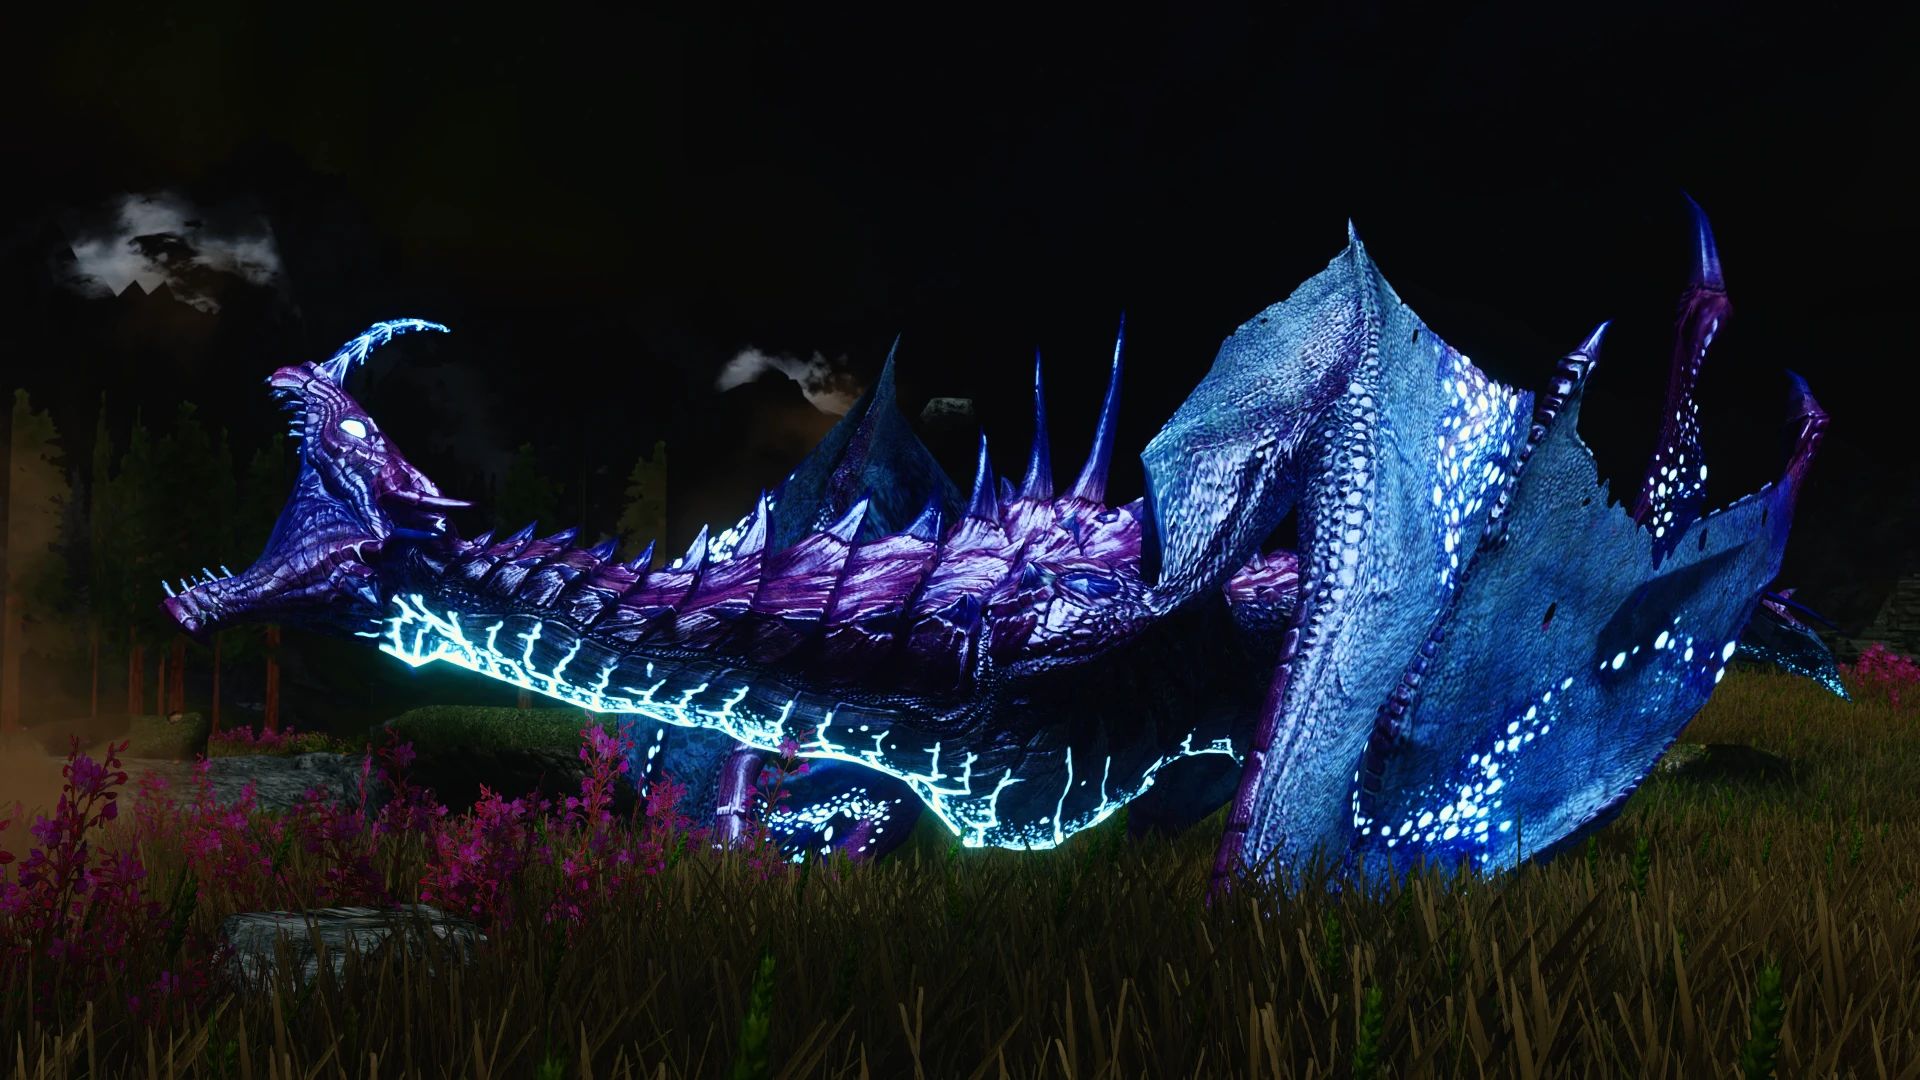 Skyrim colorful. Дракон фиолетовый. Драконы скайрим расцветка. Дракон skyrix из игры приключения дракона. Фото окрас дракона.